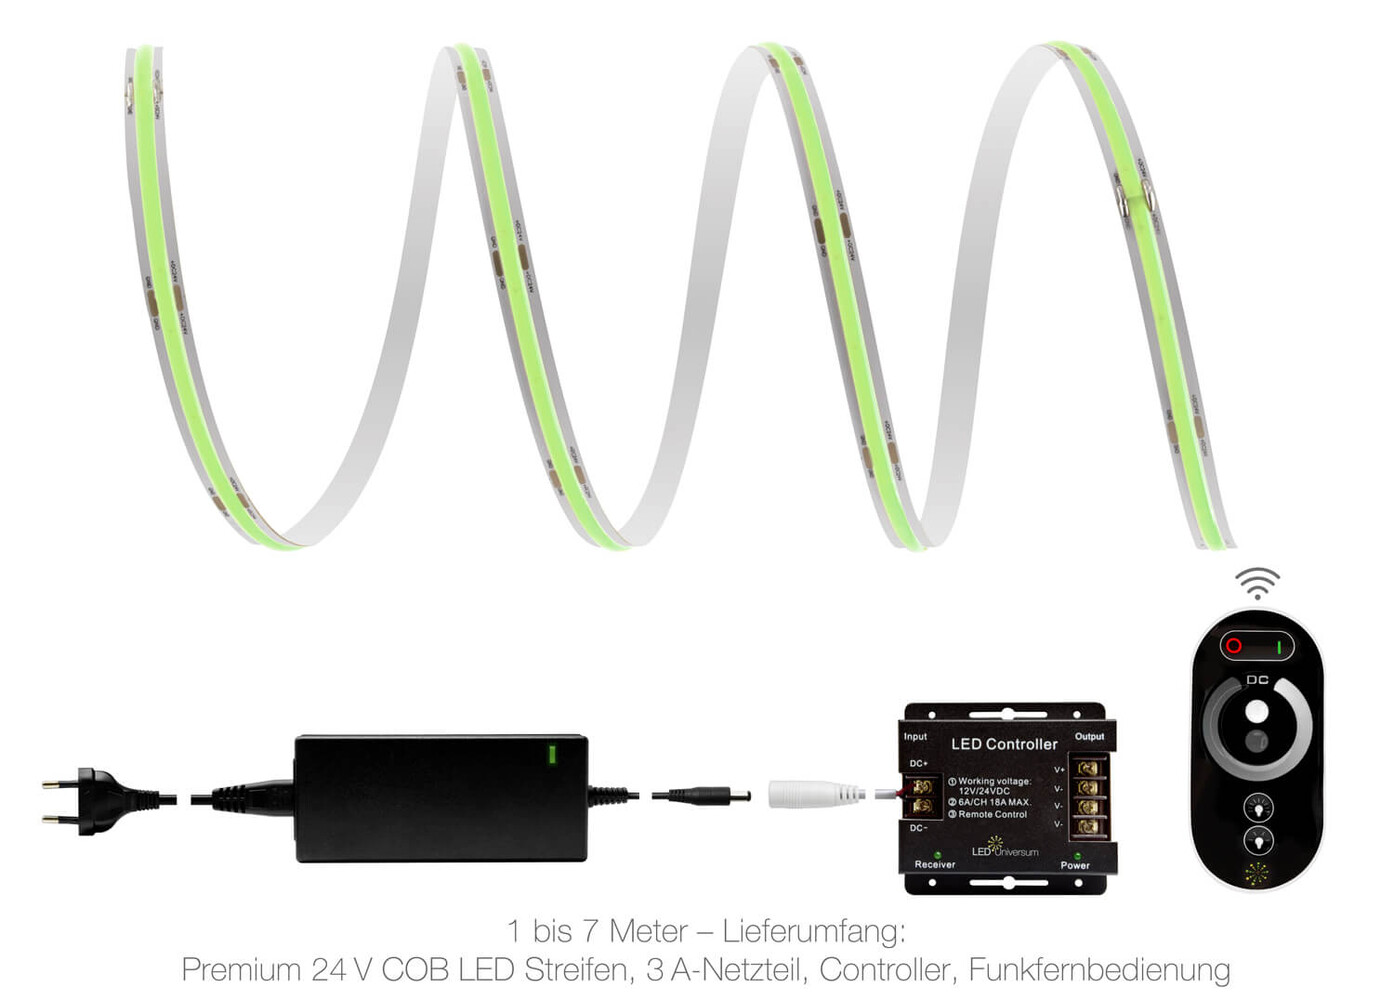 Hochwertiger grüner LED Streifen mit Premium 24V COB Technologie und Funk SET von LED Universum